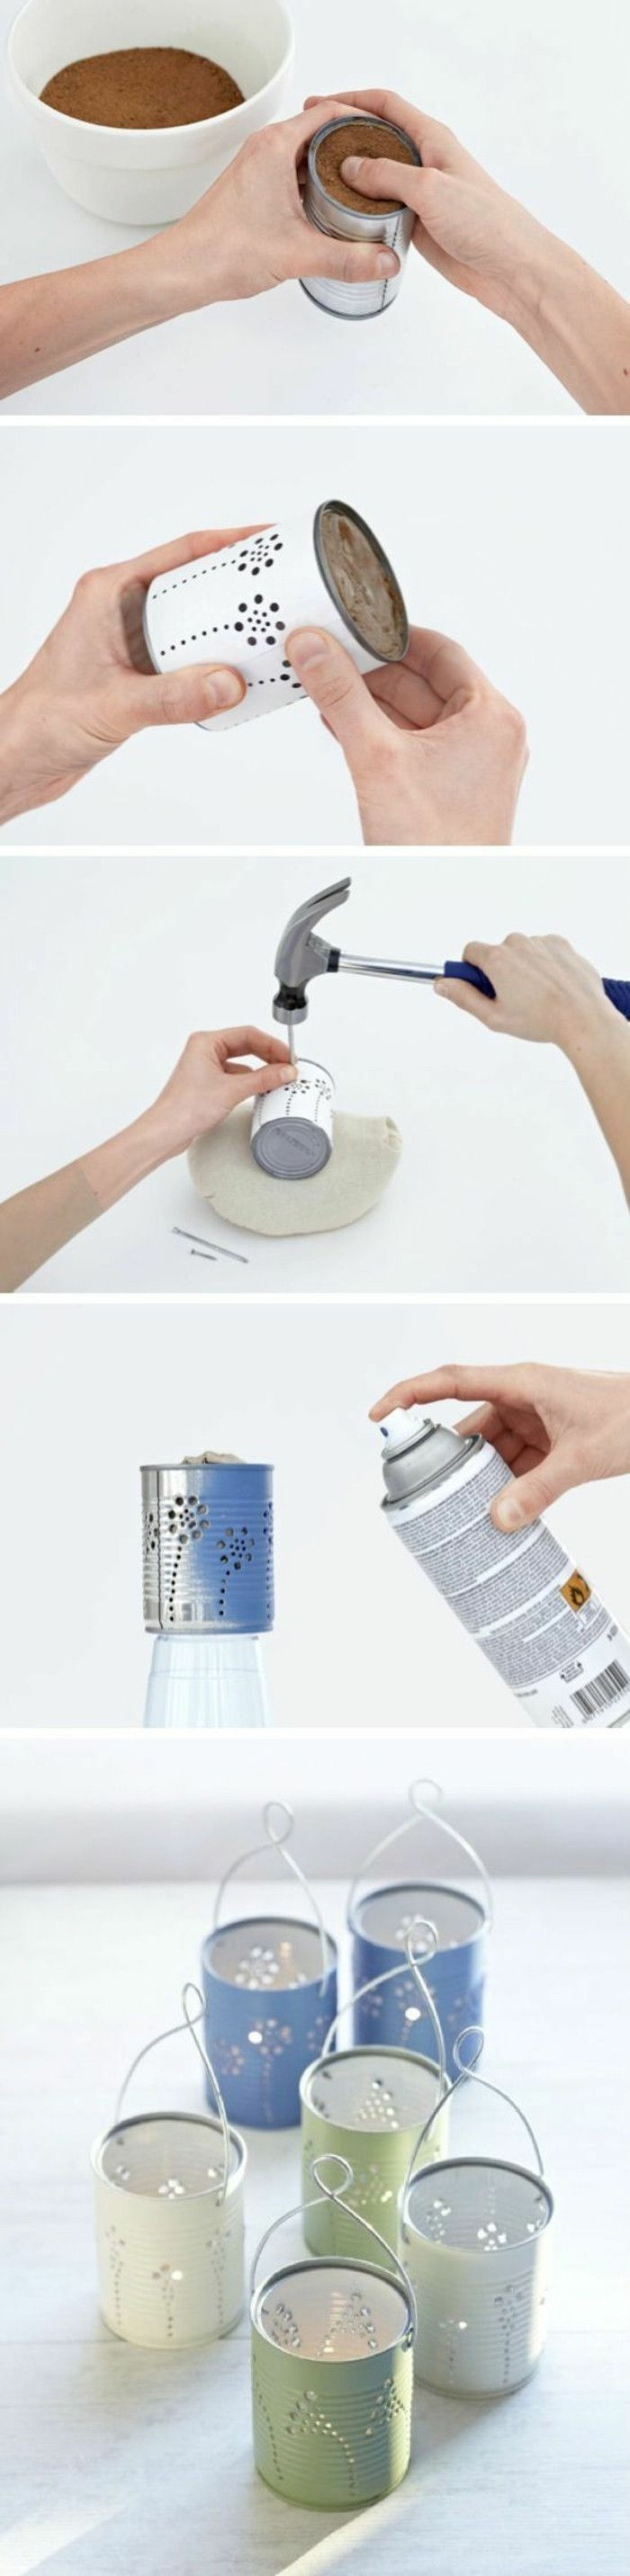 Tinker-med-plåtburkar-sprayflaskan-ljusstake-själv-make-hammare